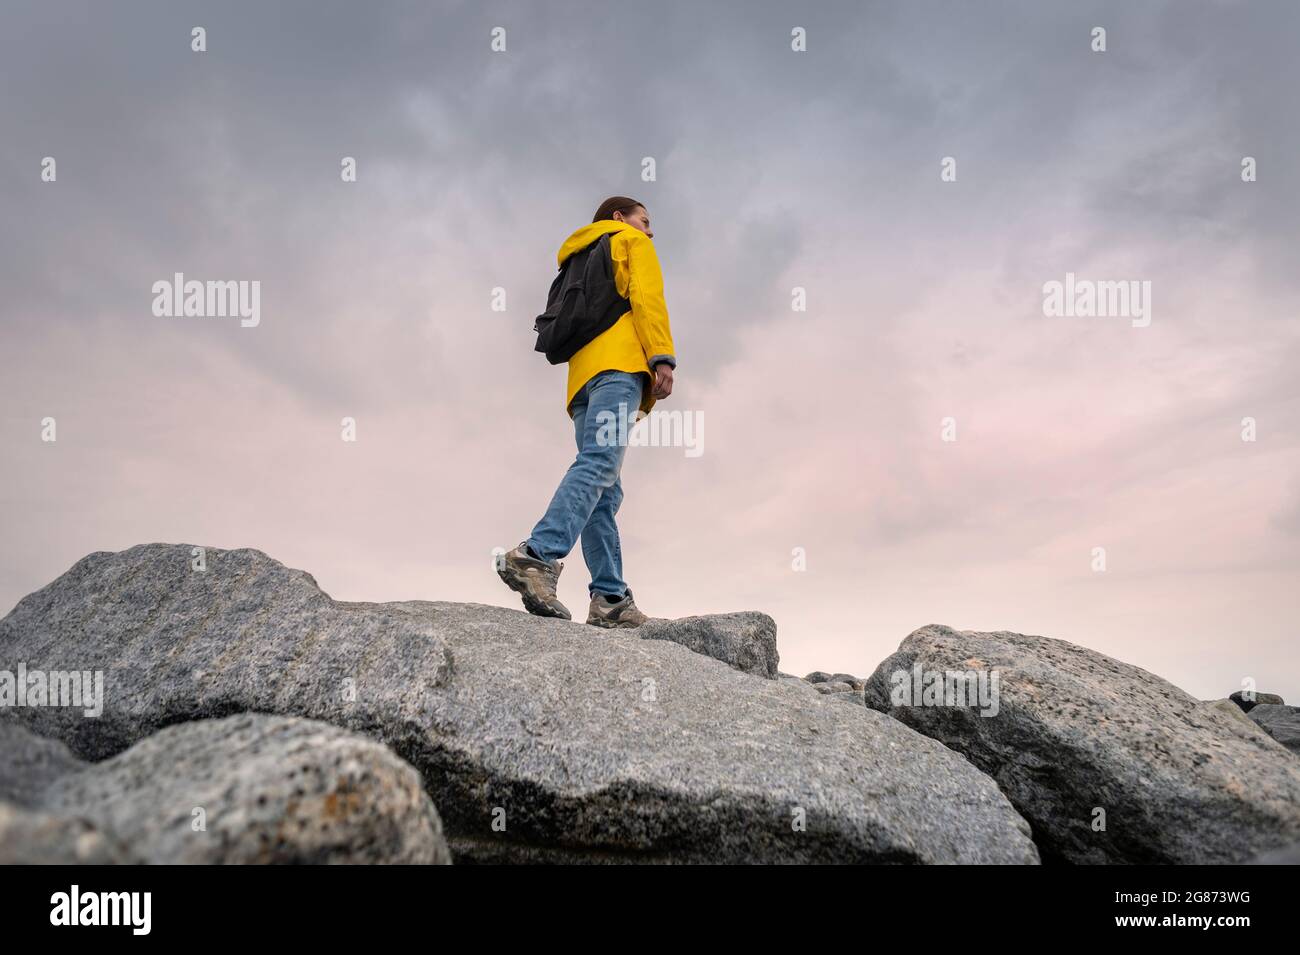 Rückansicht einer Backpacker-Frau in einer gelben Jacke, die über Felsen und Felsbrocken läuft und die Gegend erkundet. Stockfoto